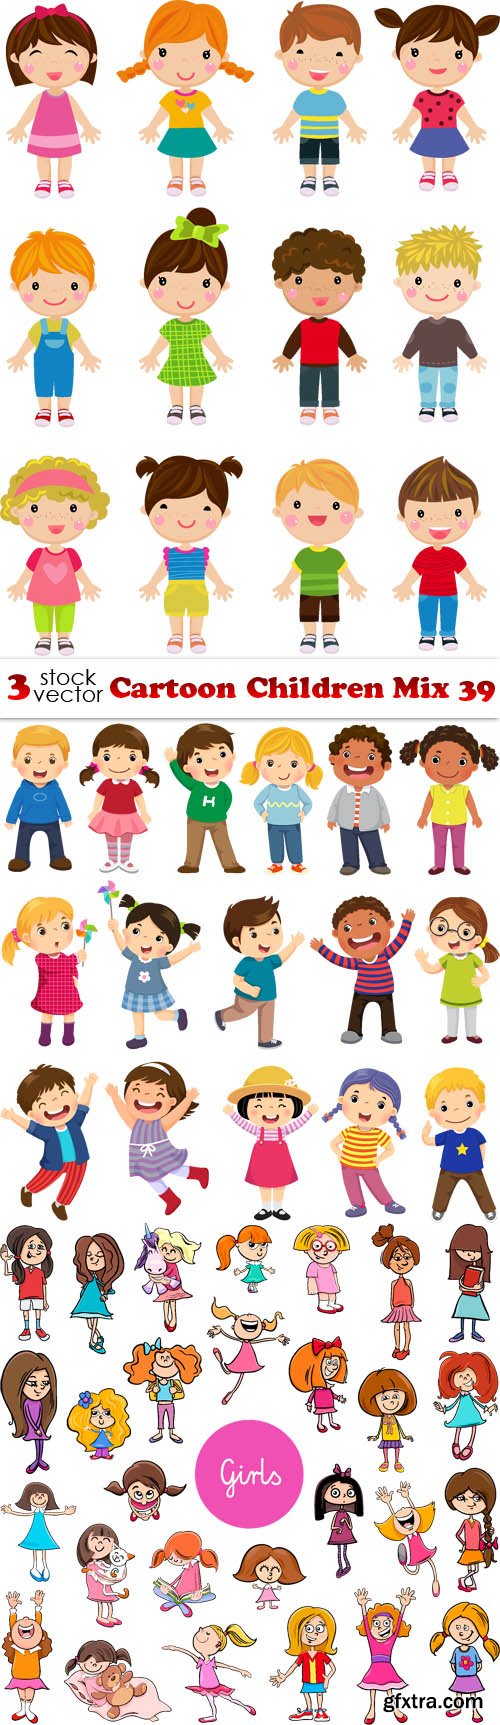 Vectors - Cartoon Children Mix 39